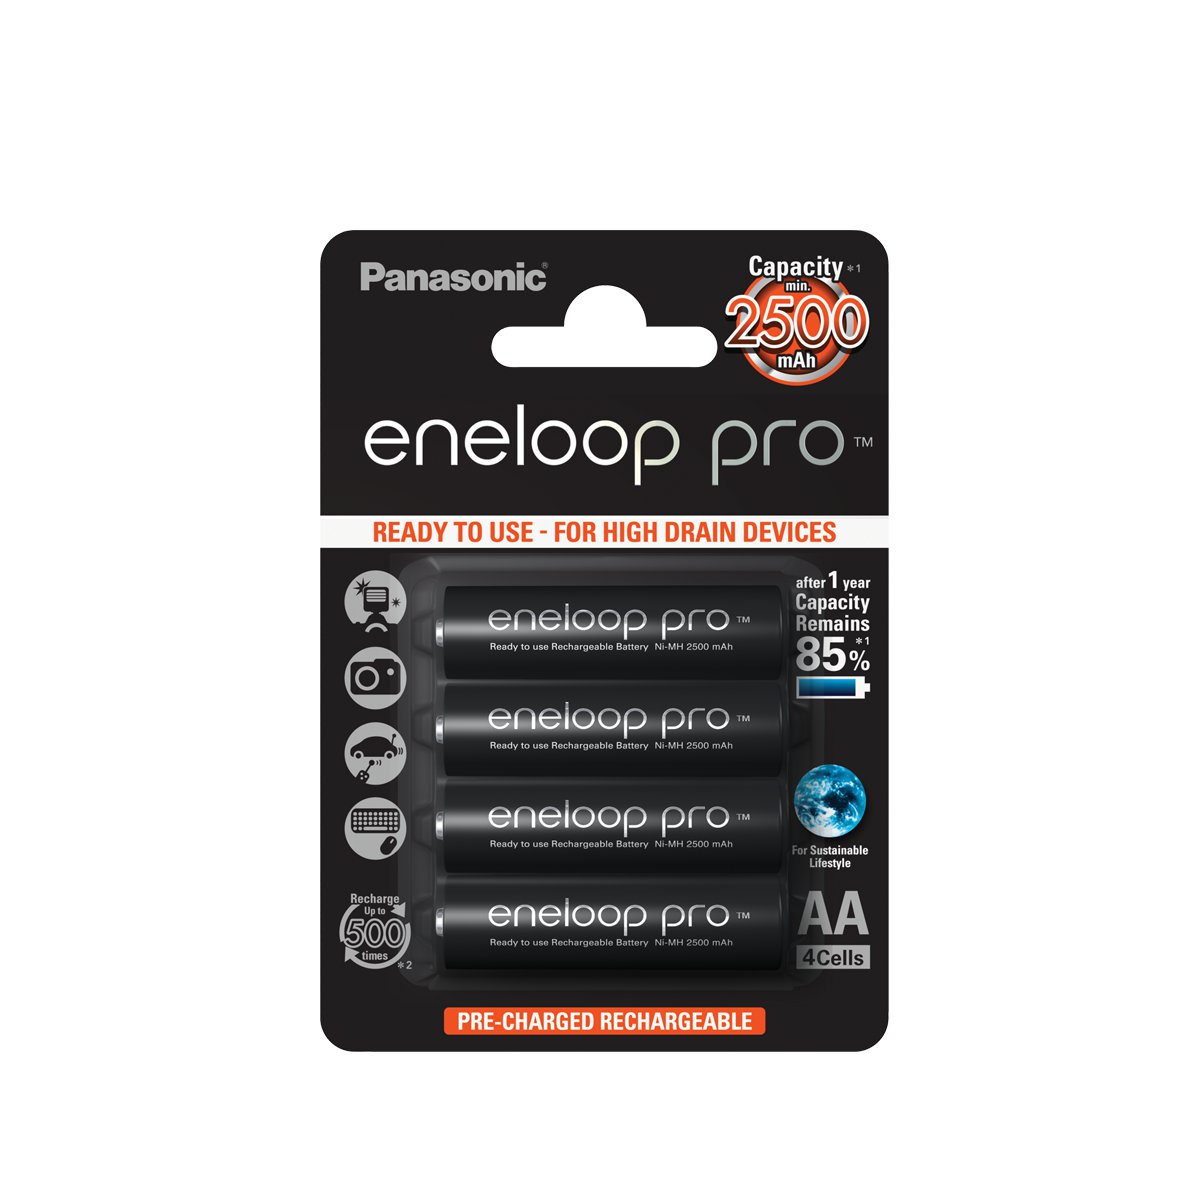 Panasonic Eneloop Pro hleðslurafhlöður